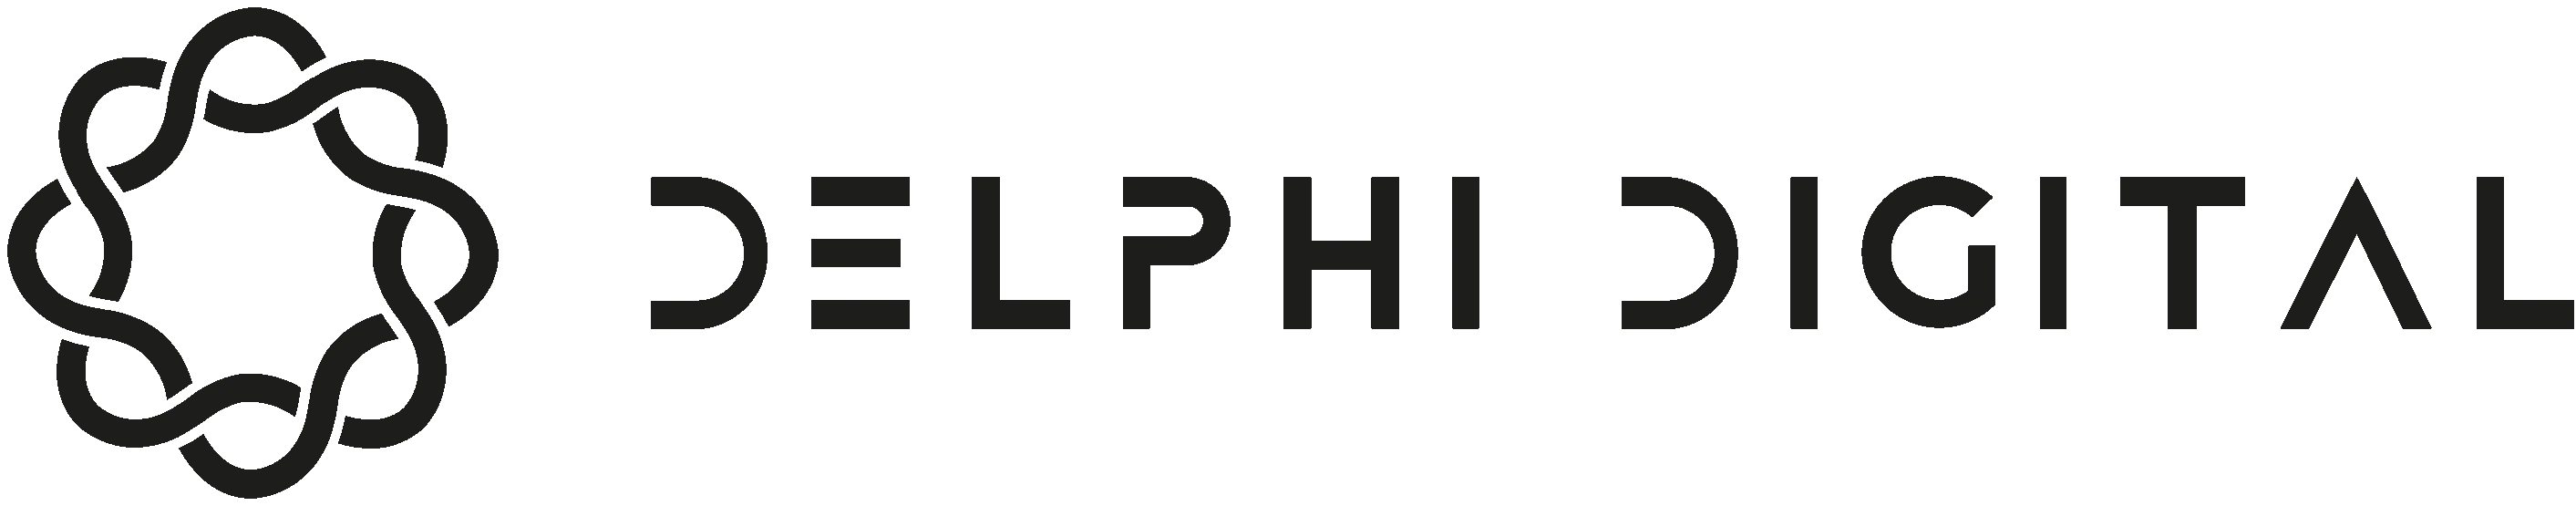 Delphi-Digital-1